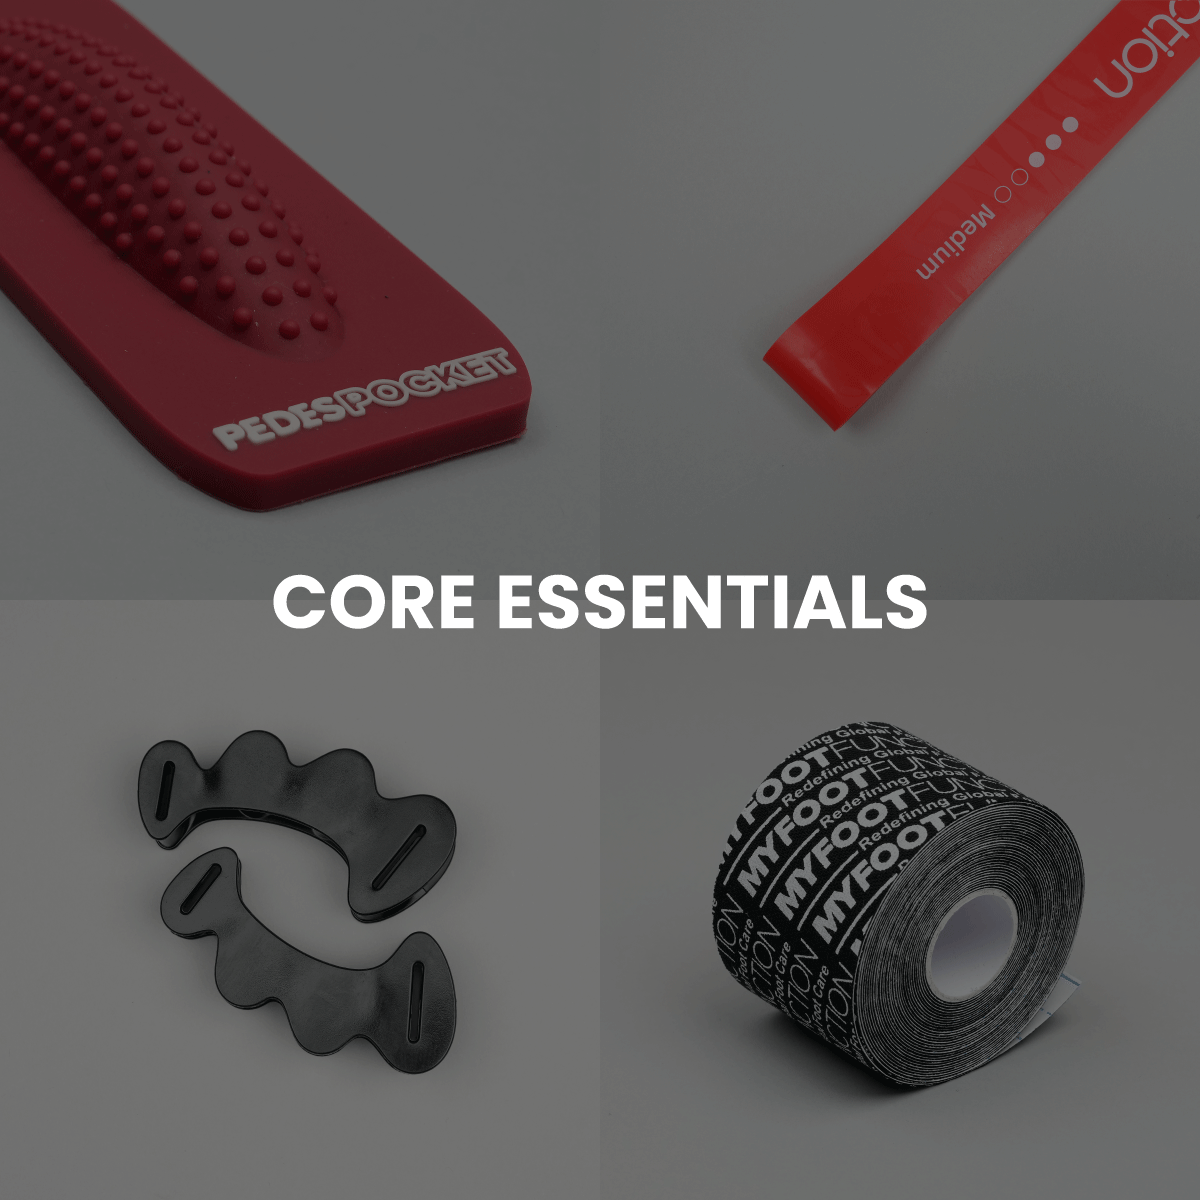 Core Essentials